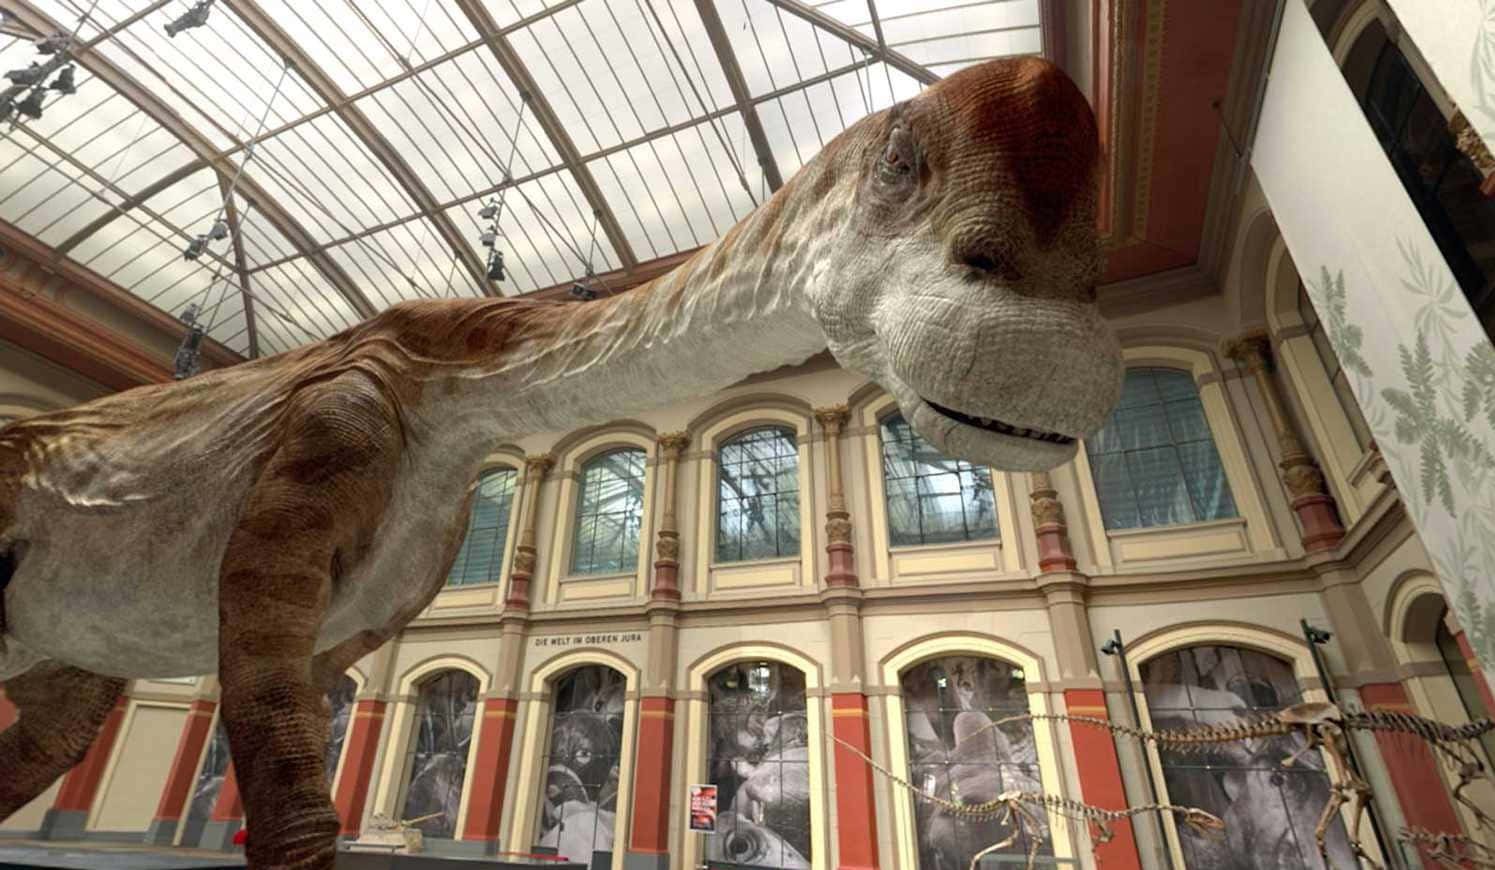 Eingroßer Dinosaurier Wird In Einem Museum Ausgestellt.